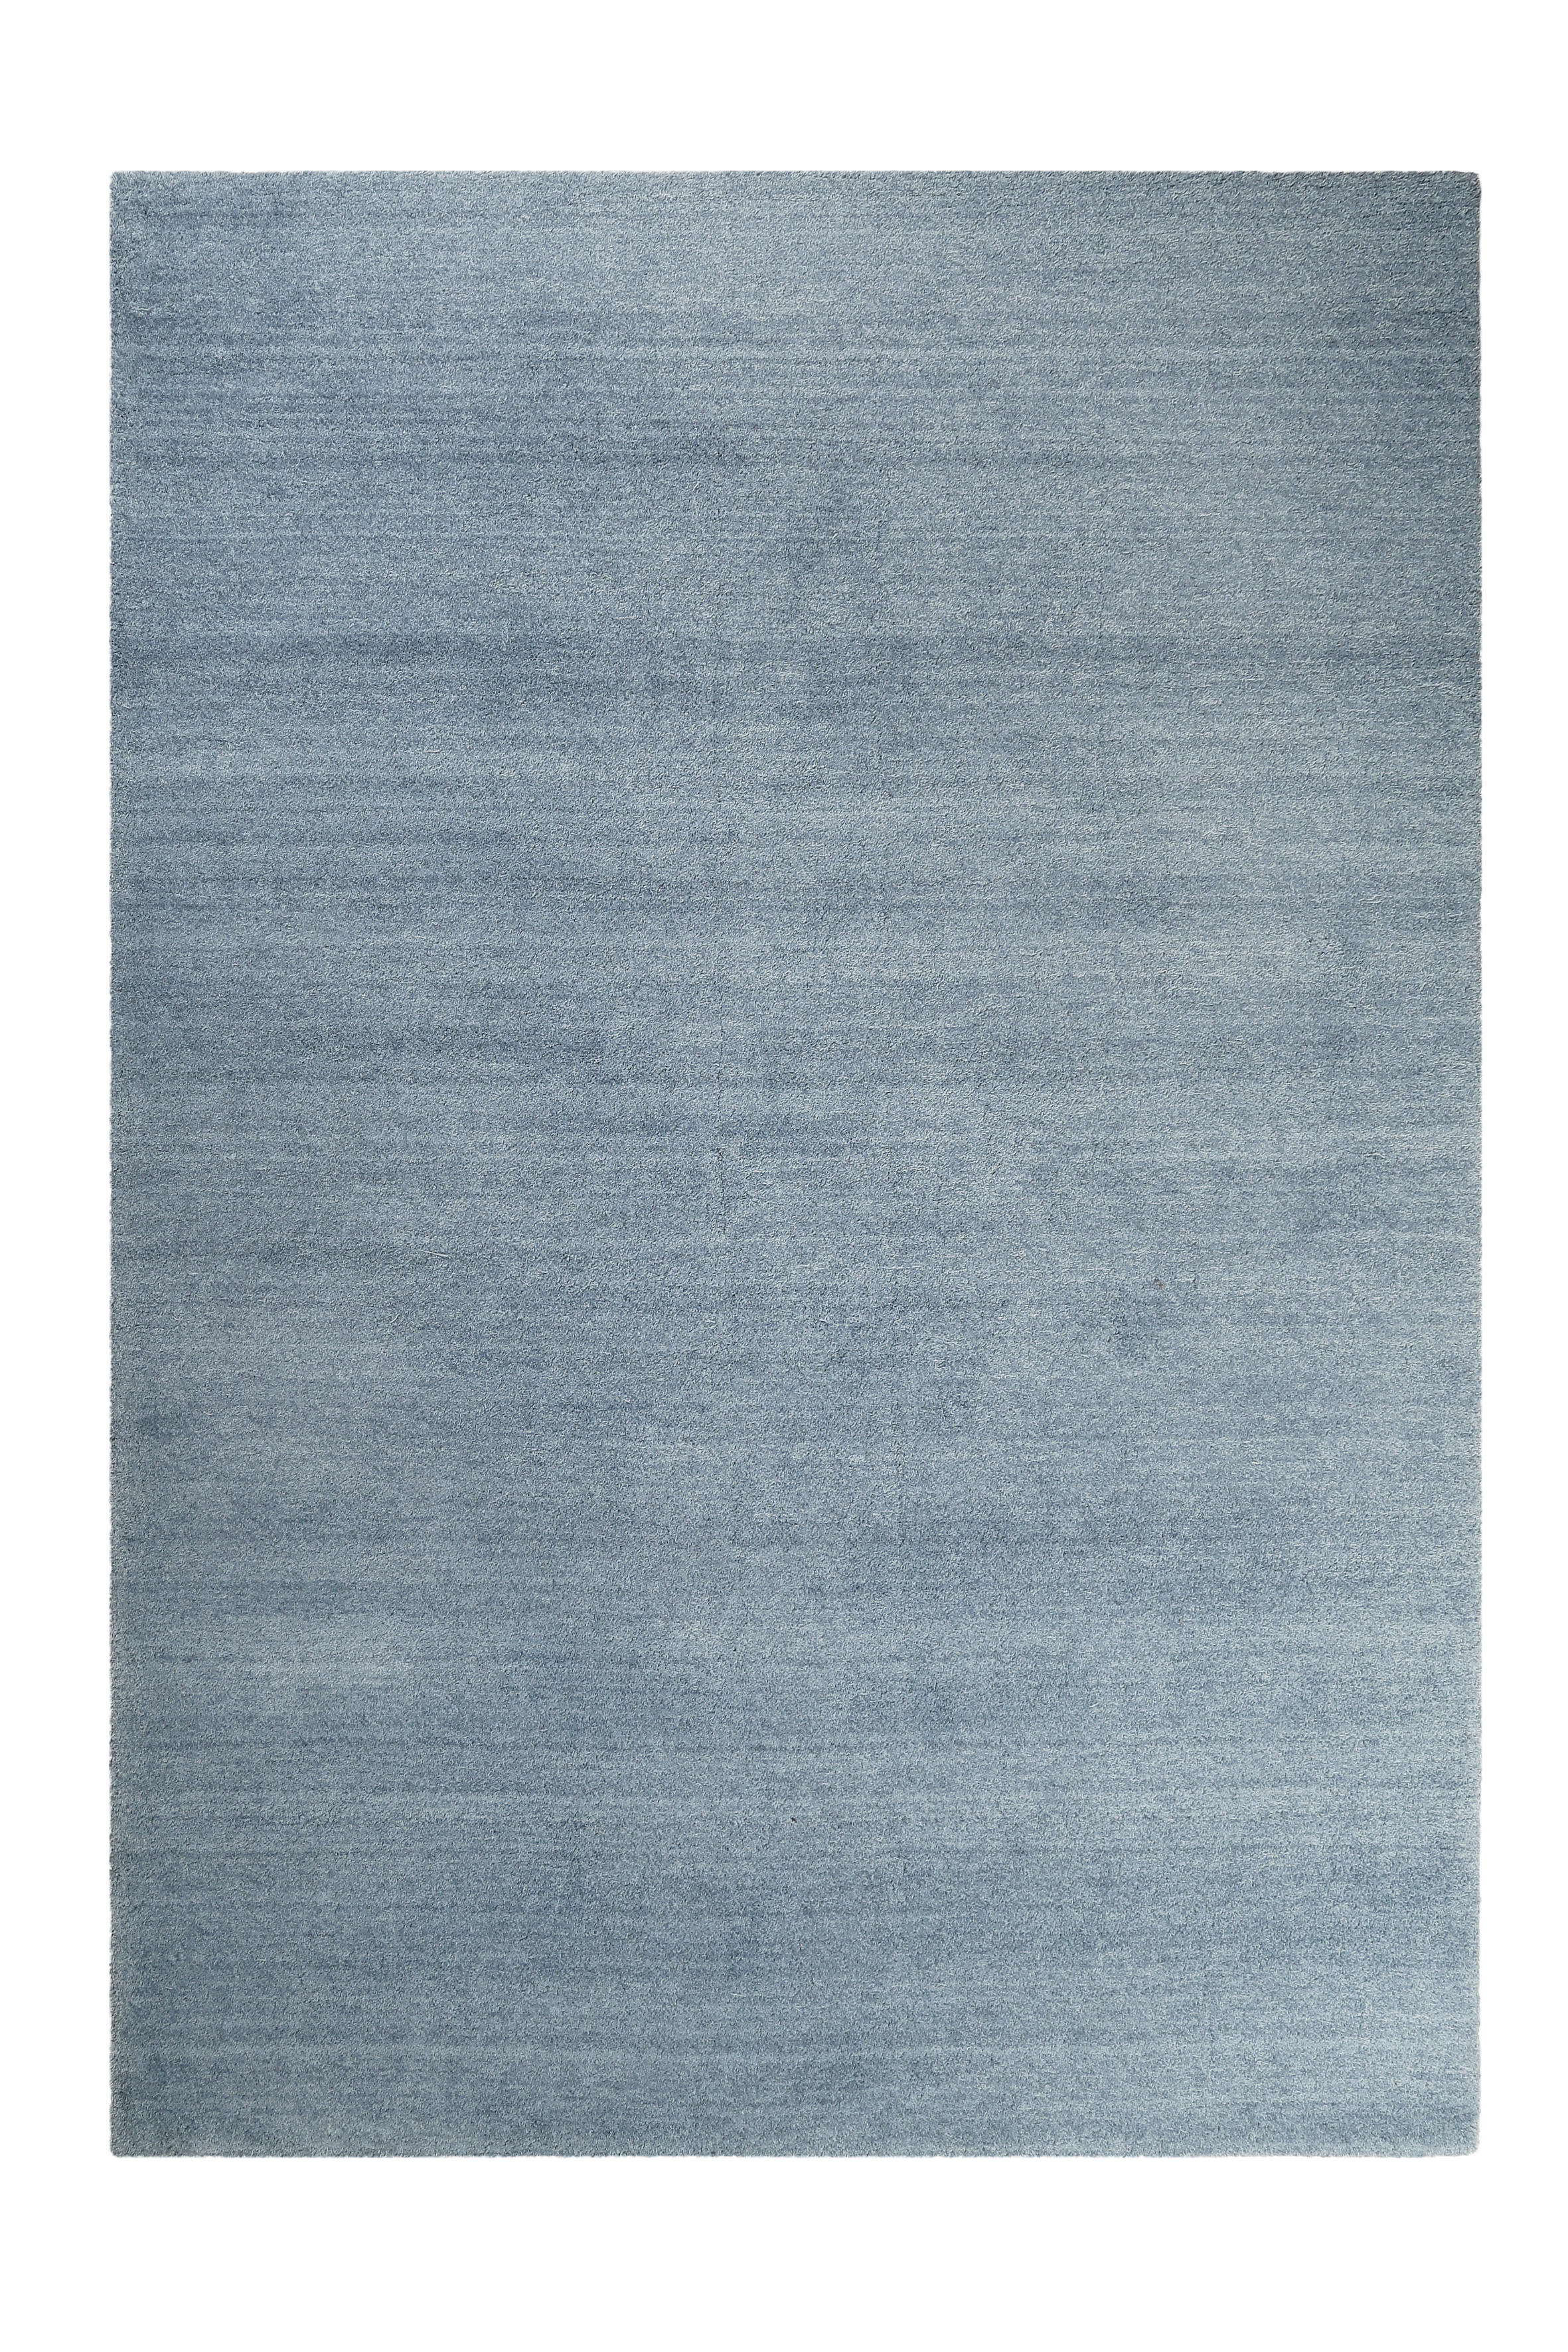 HOCHFLORTEPPICH  70/140 cm  getuftet  Blau   - Blau, Basics, Textil (70/140cm) - Esprit